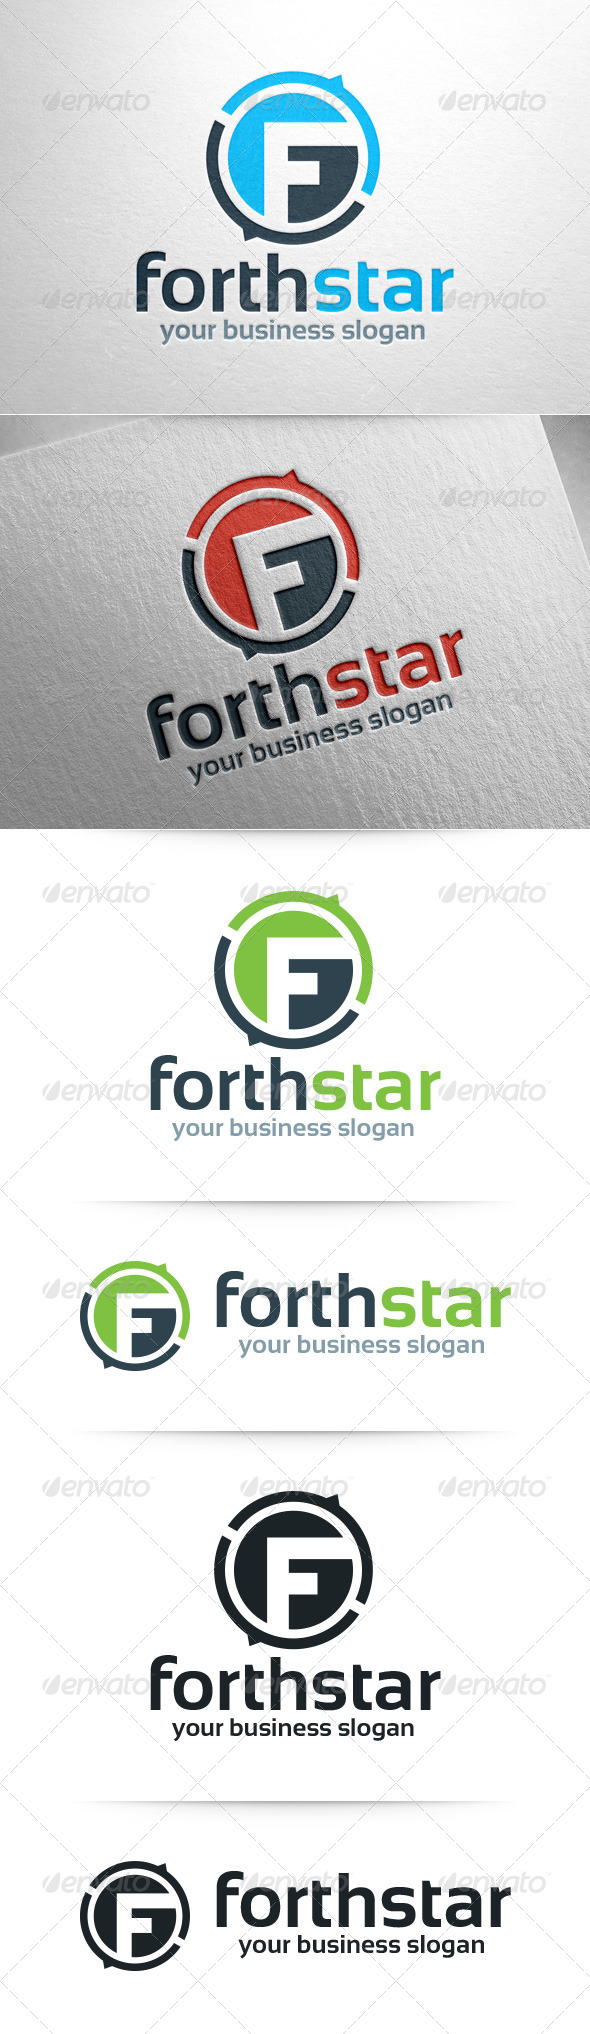 Forthstar - Letter F Logo Template